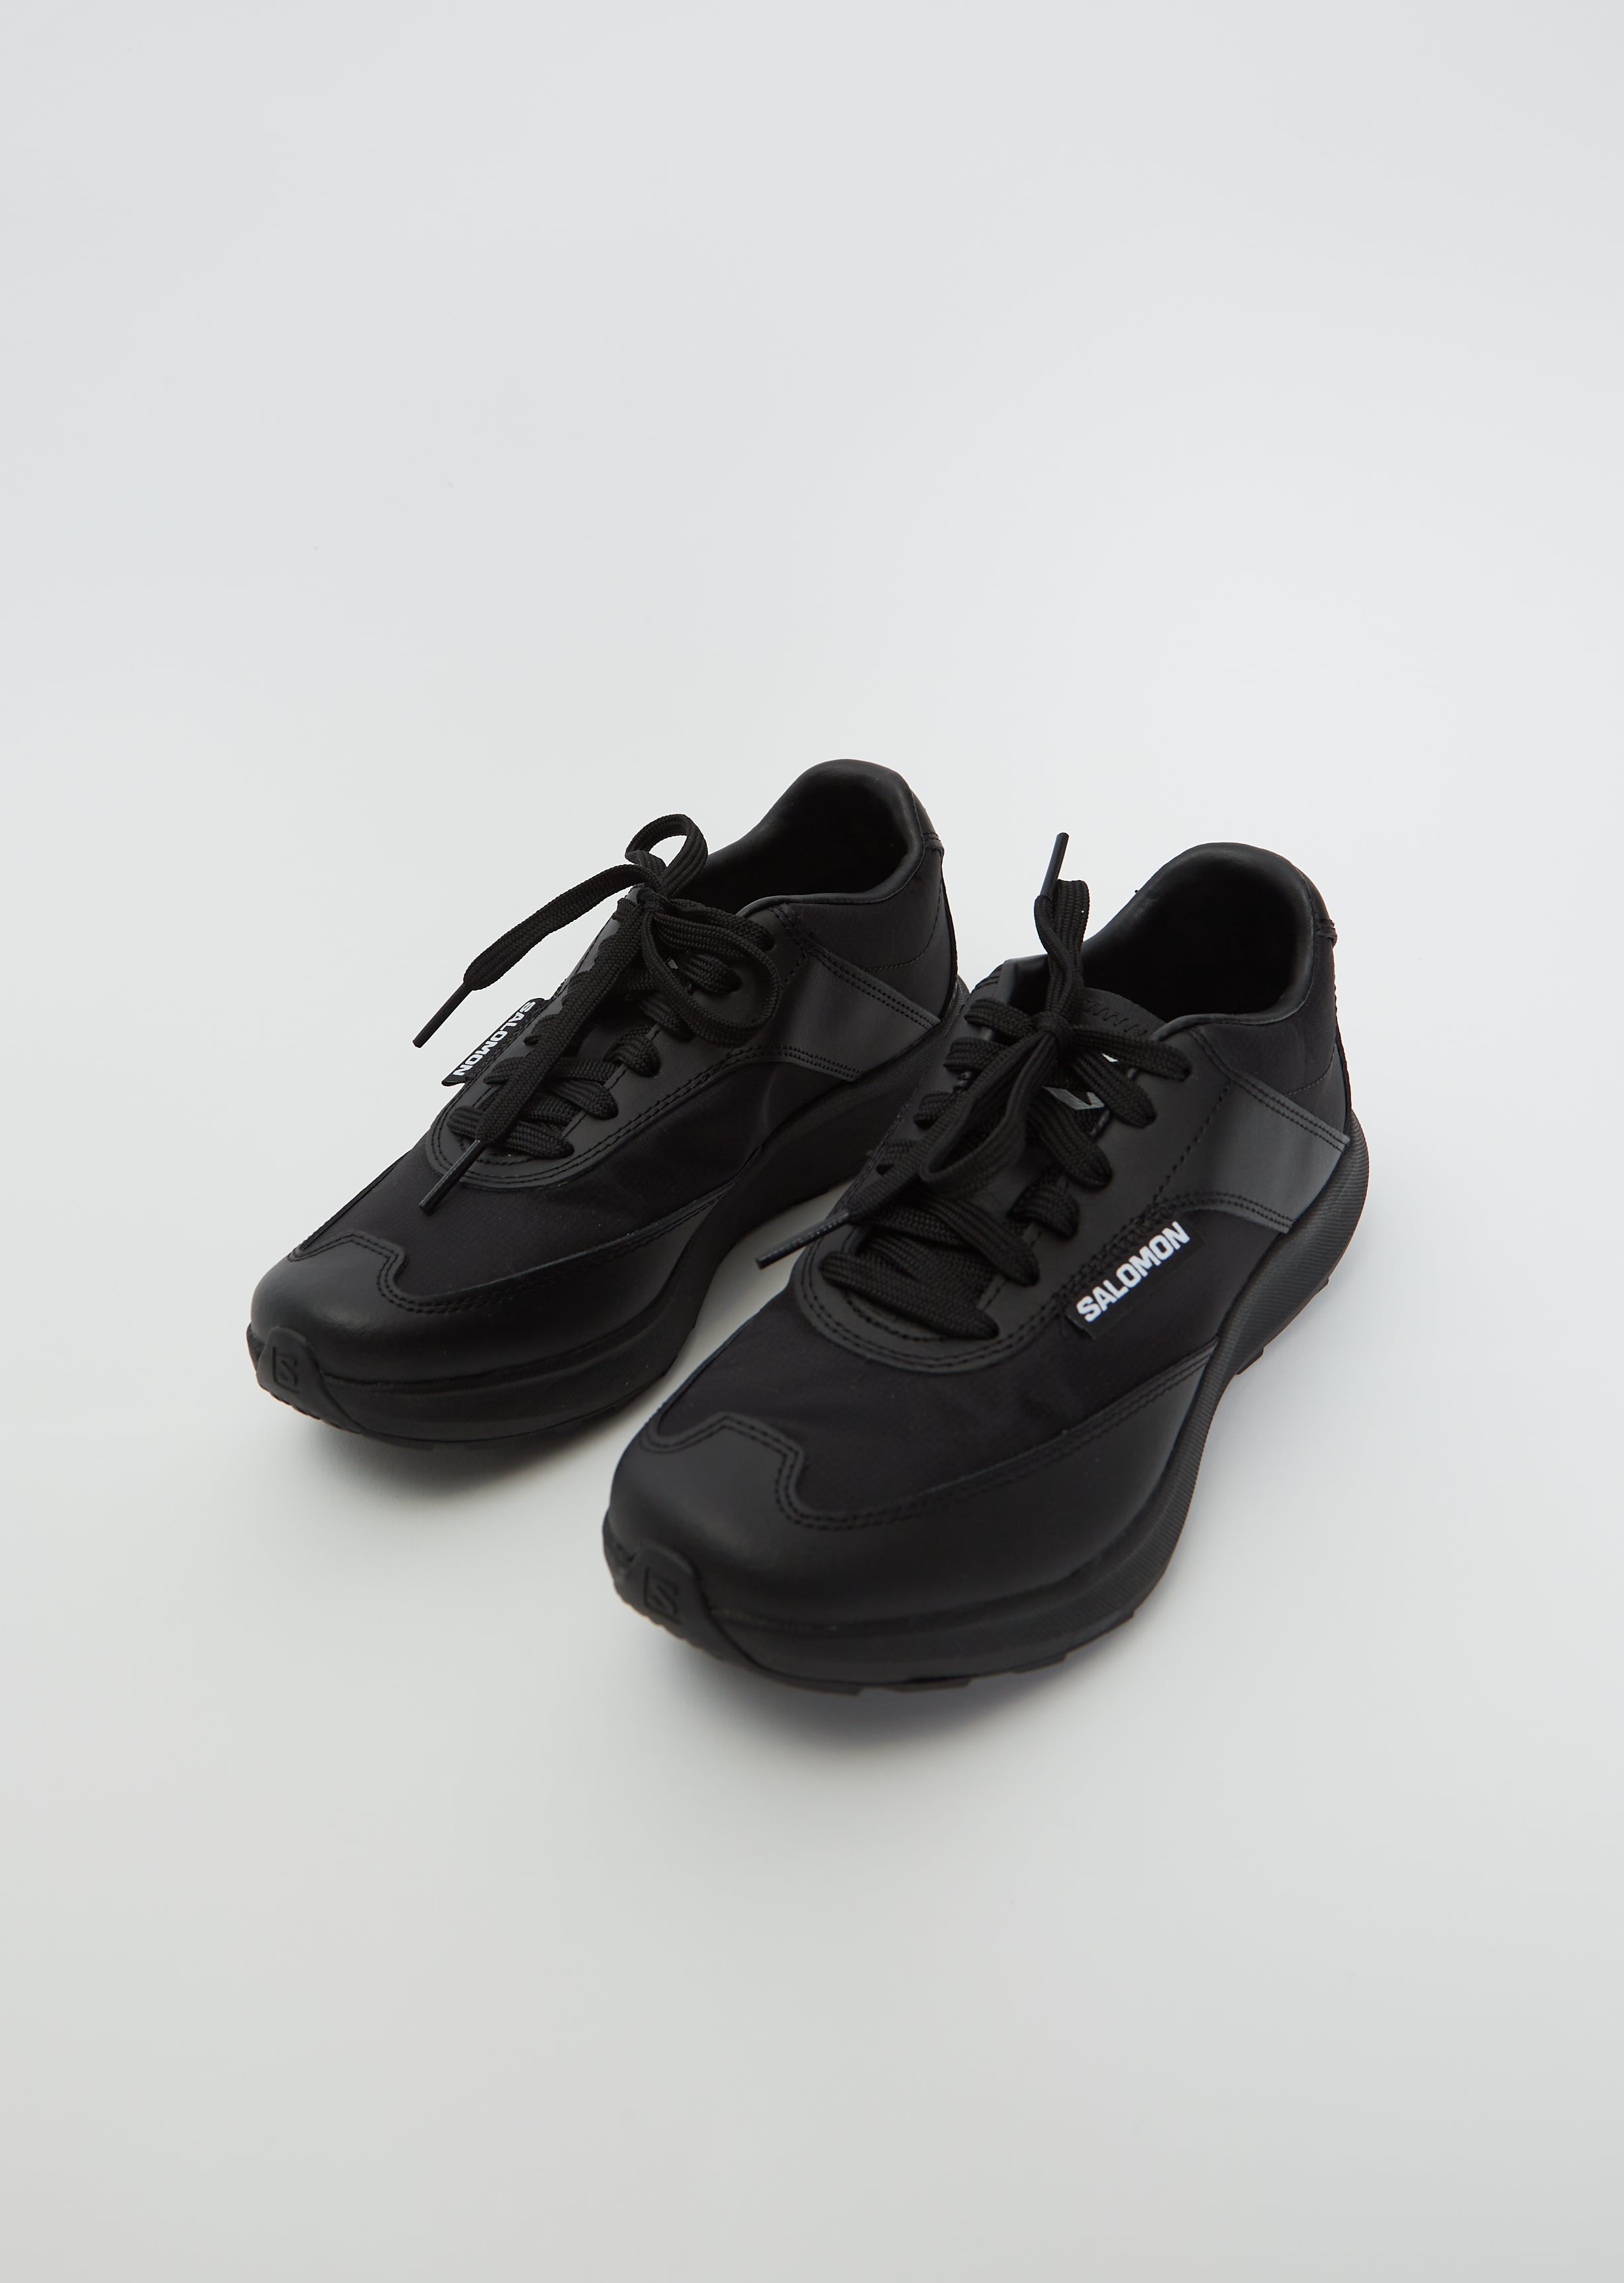 Comme des Garçons x Salomon SR90 Sneaker — Black – La Garçonne